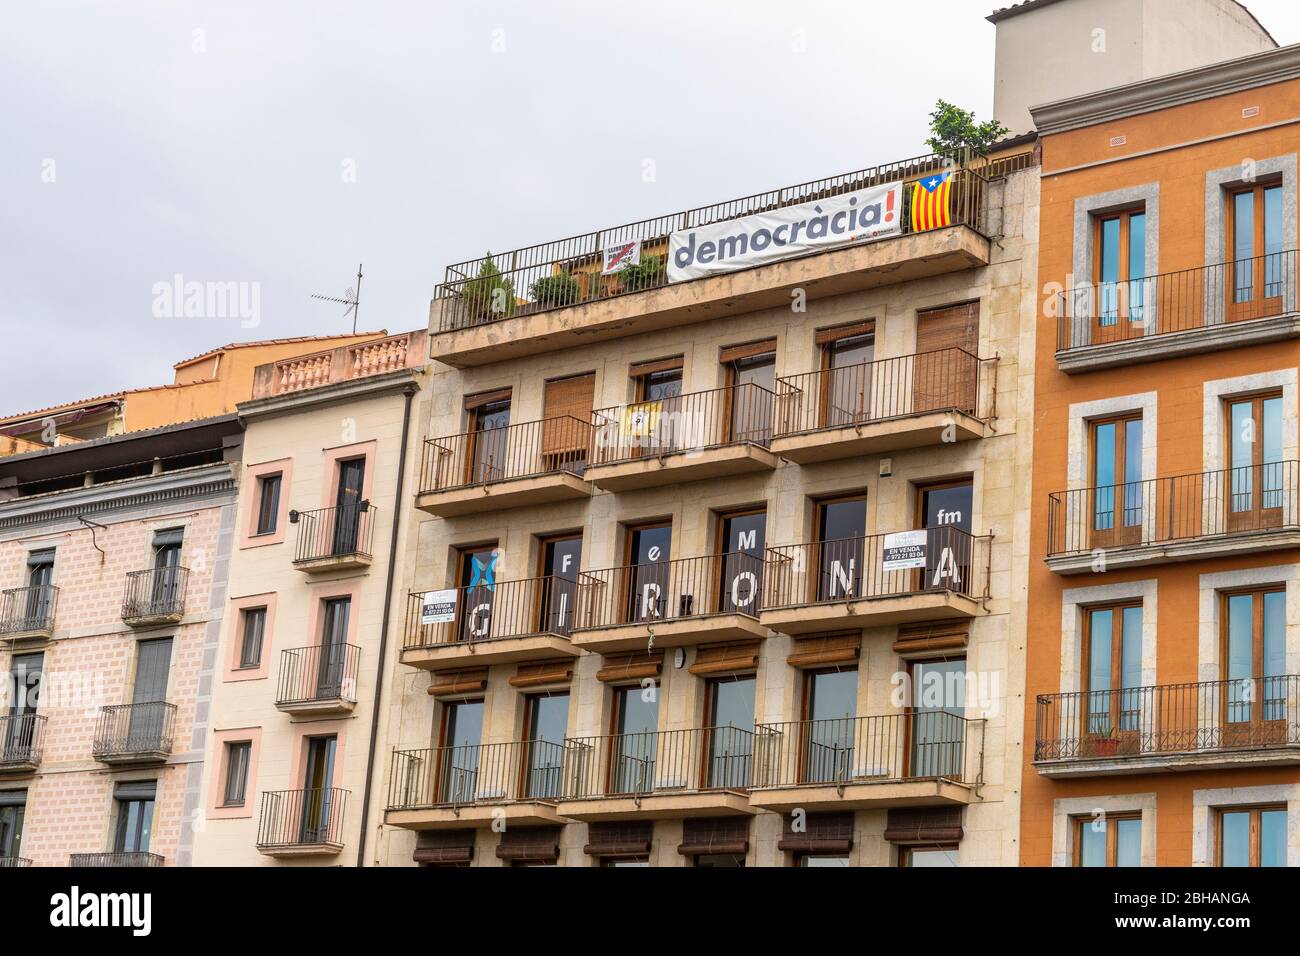 Europa, Spanien, Katalonien, Girona, Zeichen des katalanischen Unabhängigkeitskrieges in der Altstadt von Girona Stockfoto